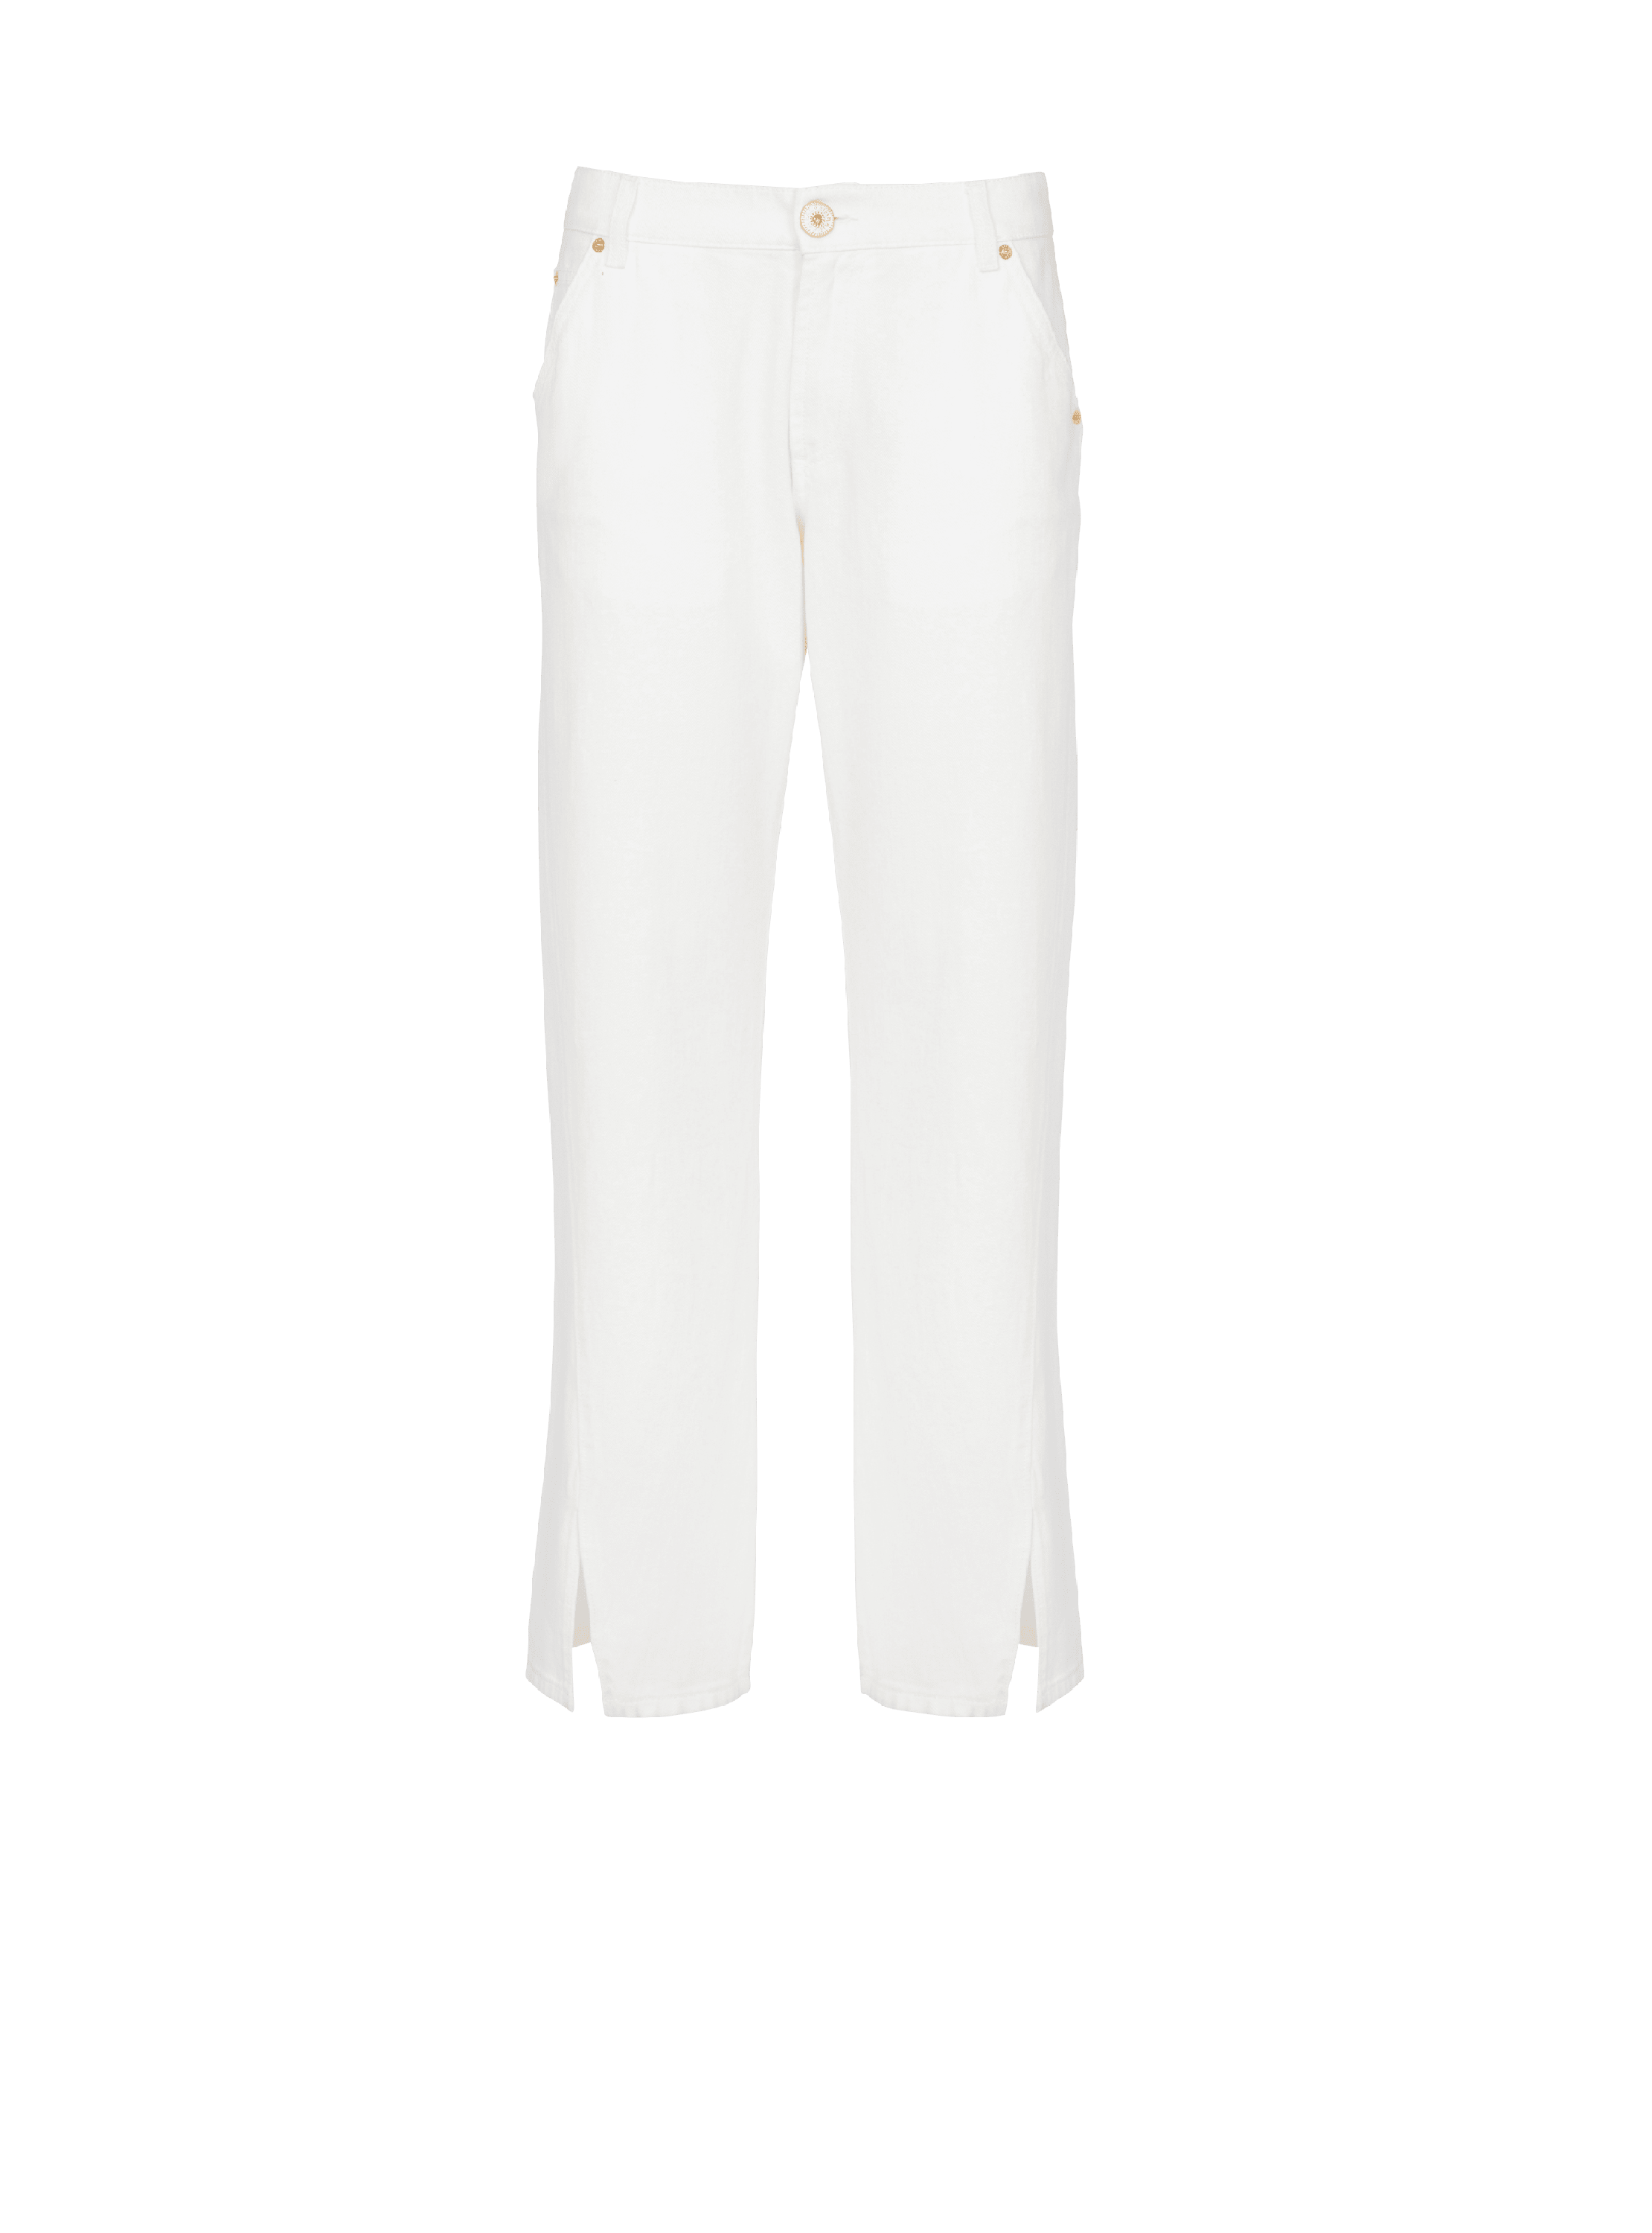 Pantalones vaqueros blancos de corte recto, blanco, hi-res